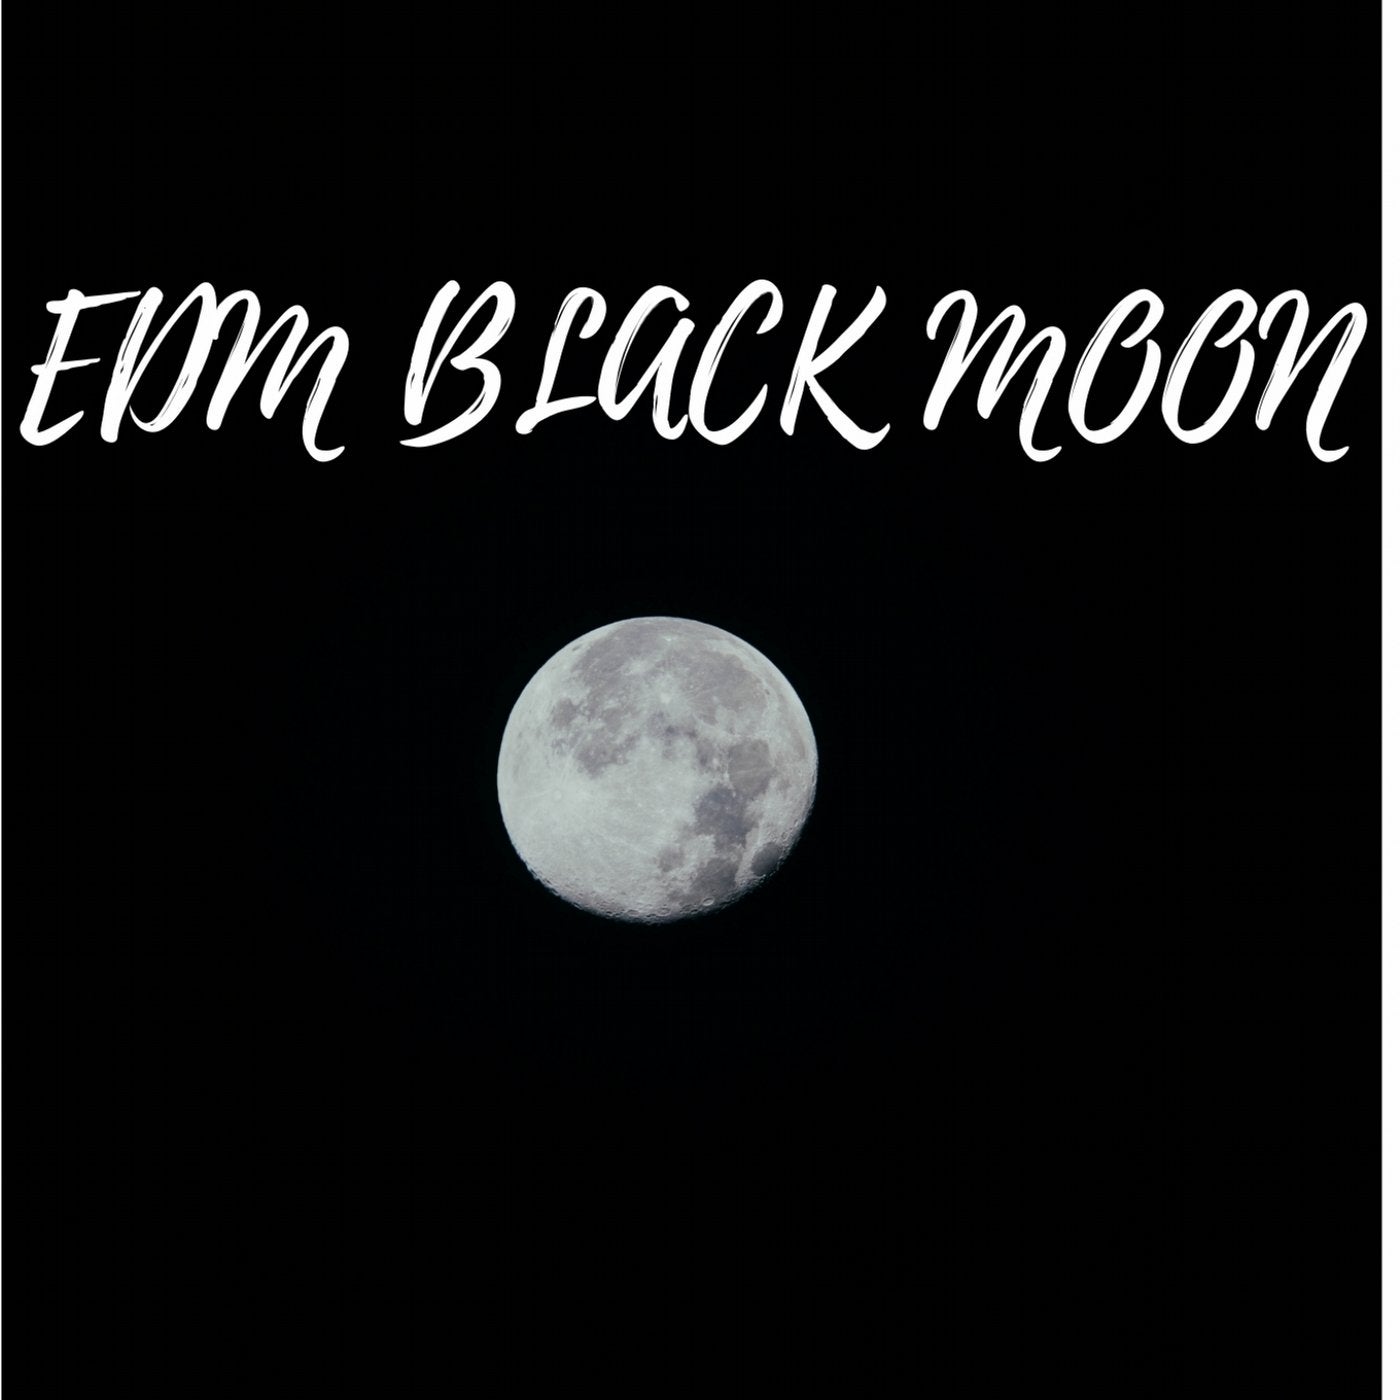 EDM BLACK MOON